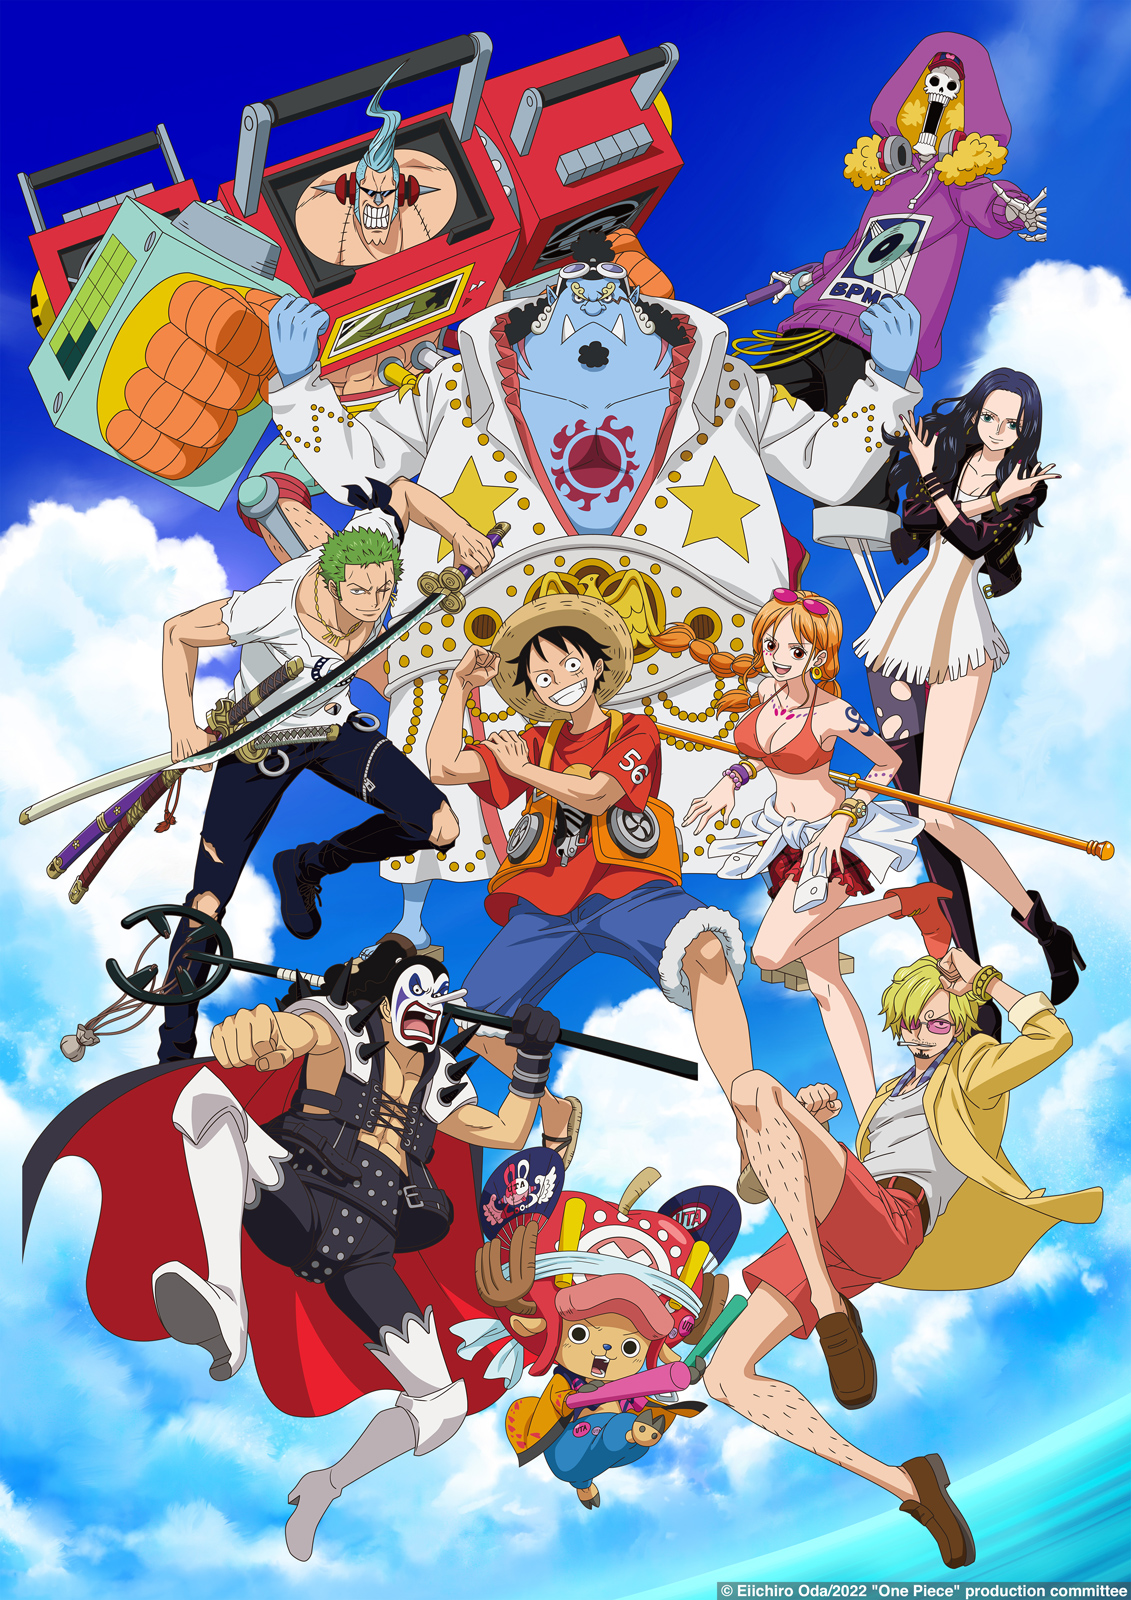 One Piece Filme: Red - Filme ganha primeiro trailer com dublagem